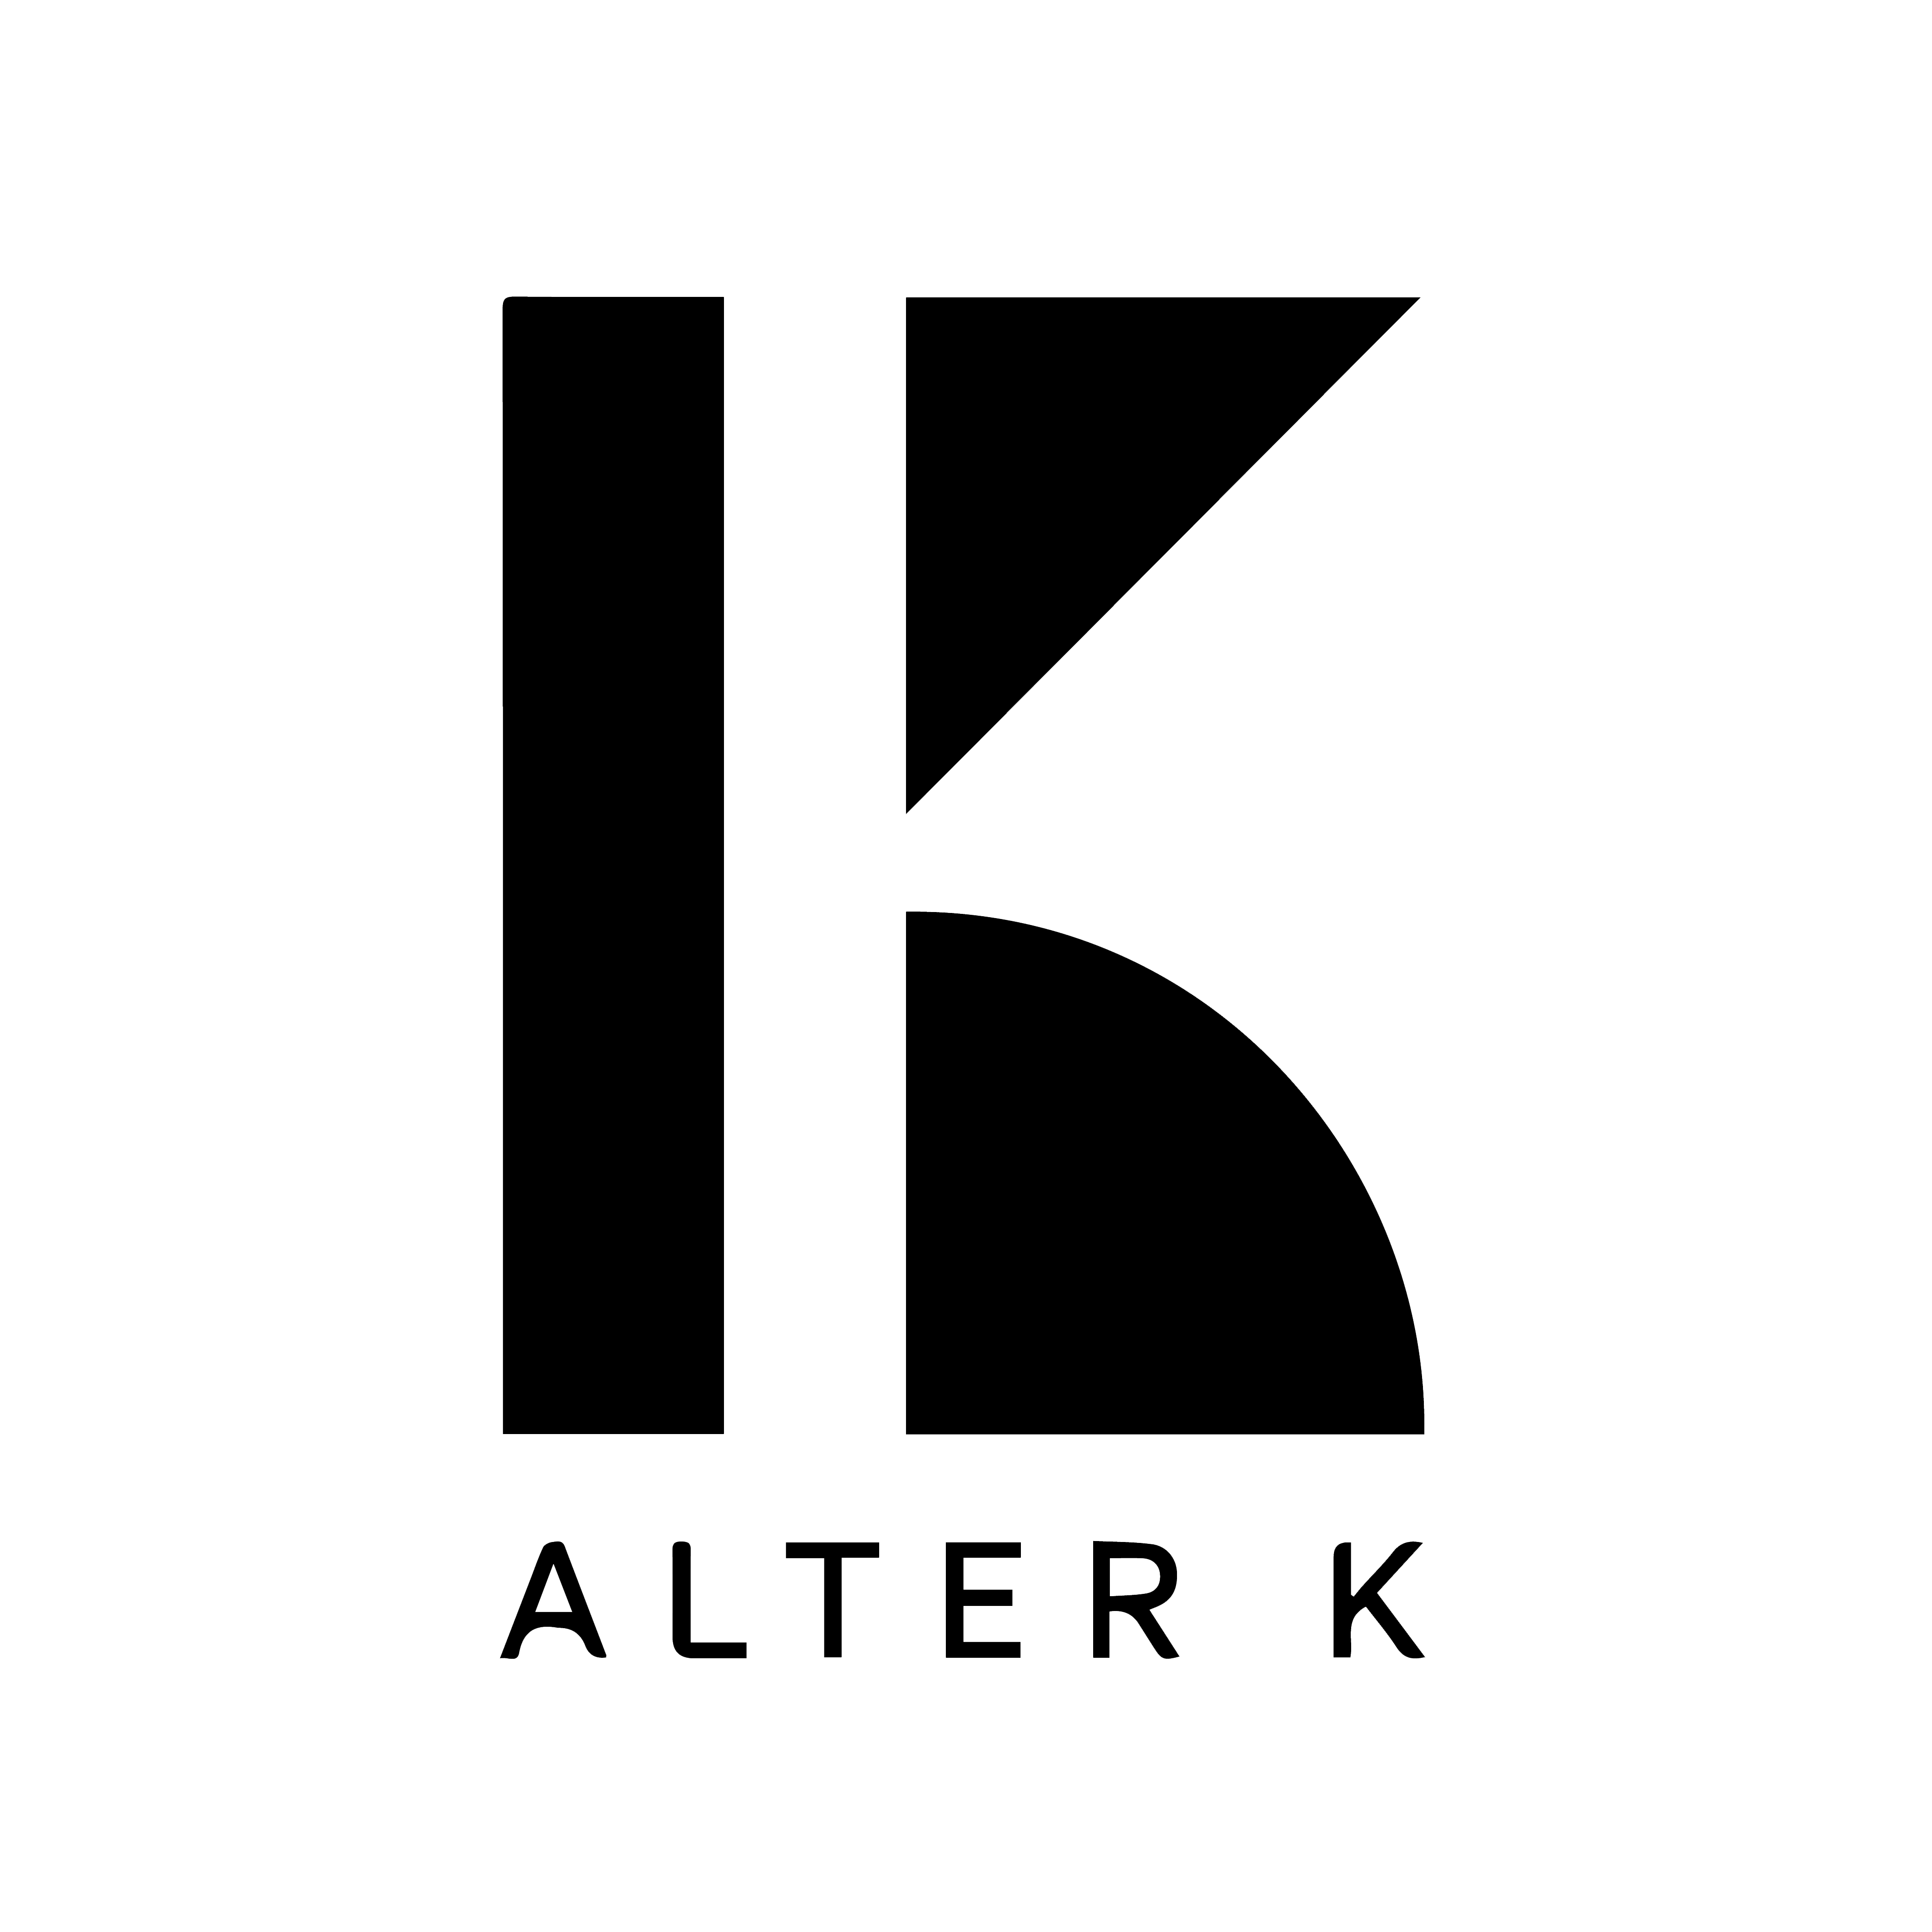 Alter K